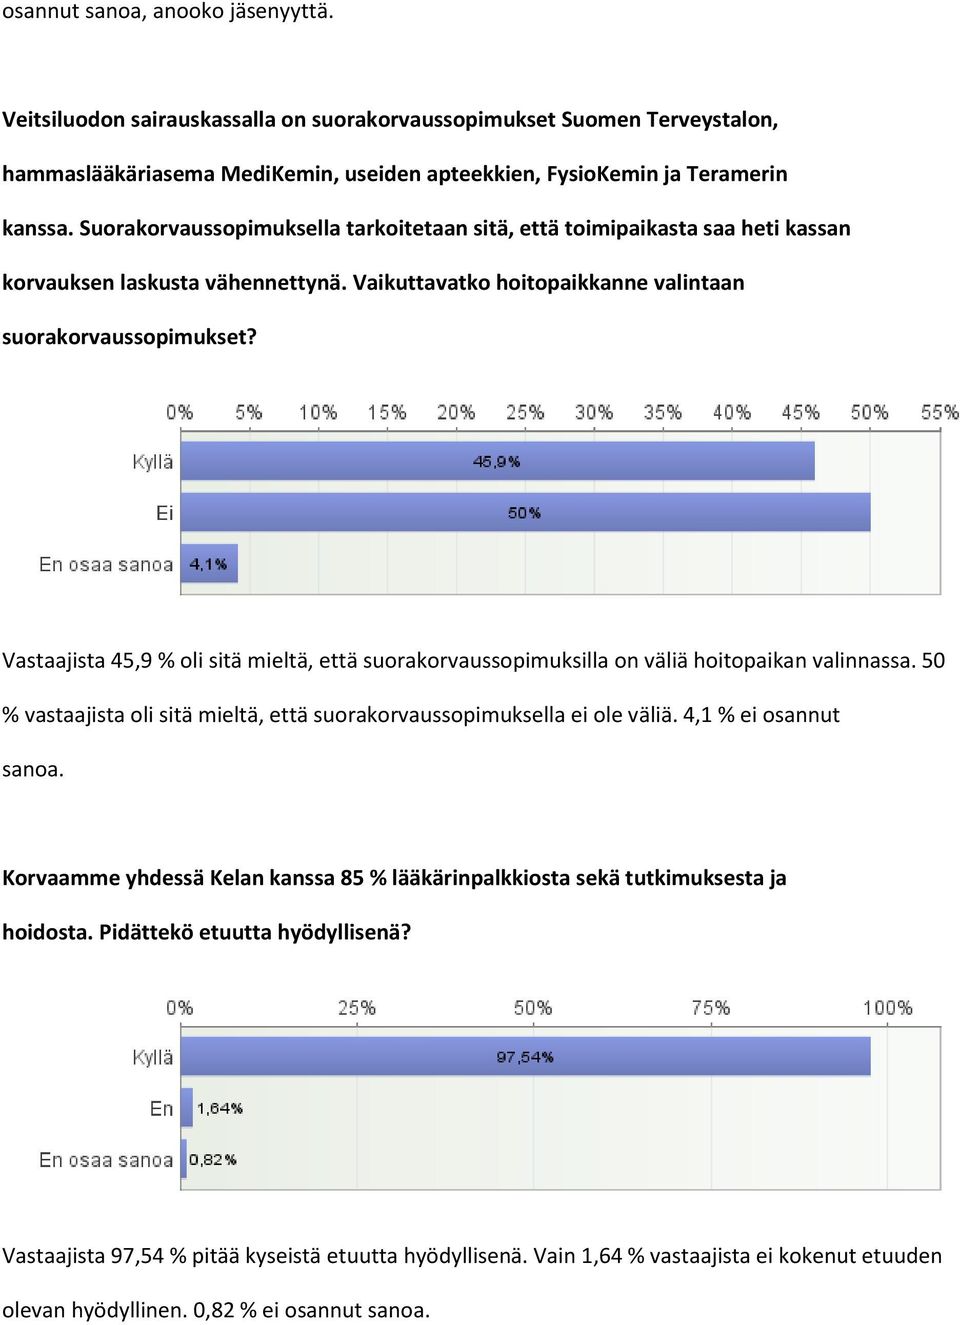 Vastaajista 45,9 % oli sitä mieltä, että suorakorvaussopimuksilla on väliä hoitopaikan valinnassa. 50 % vastaajista oli sitä mieltä, että suorakorvaussopimuksella ei ole väliä. 4,1 % ei osannut sanoa.